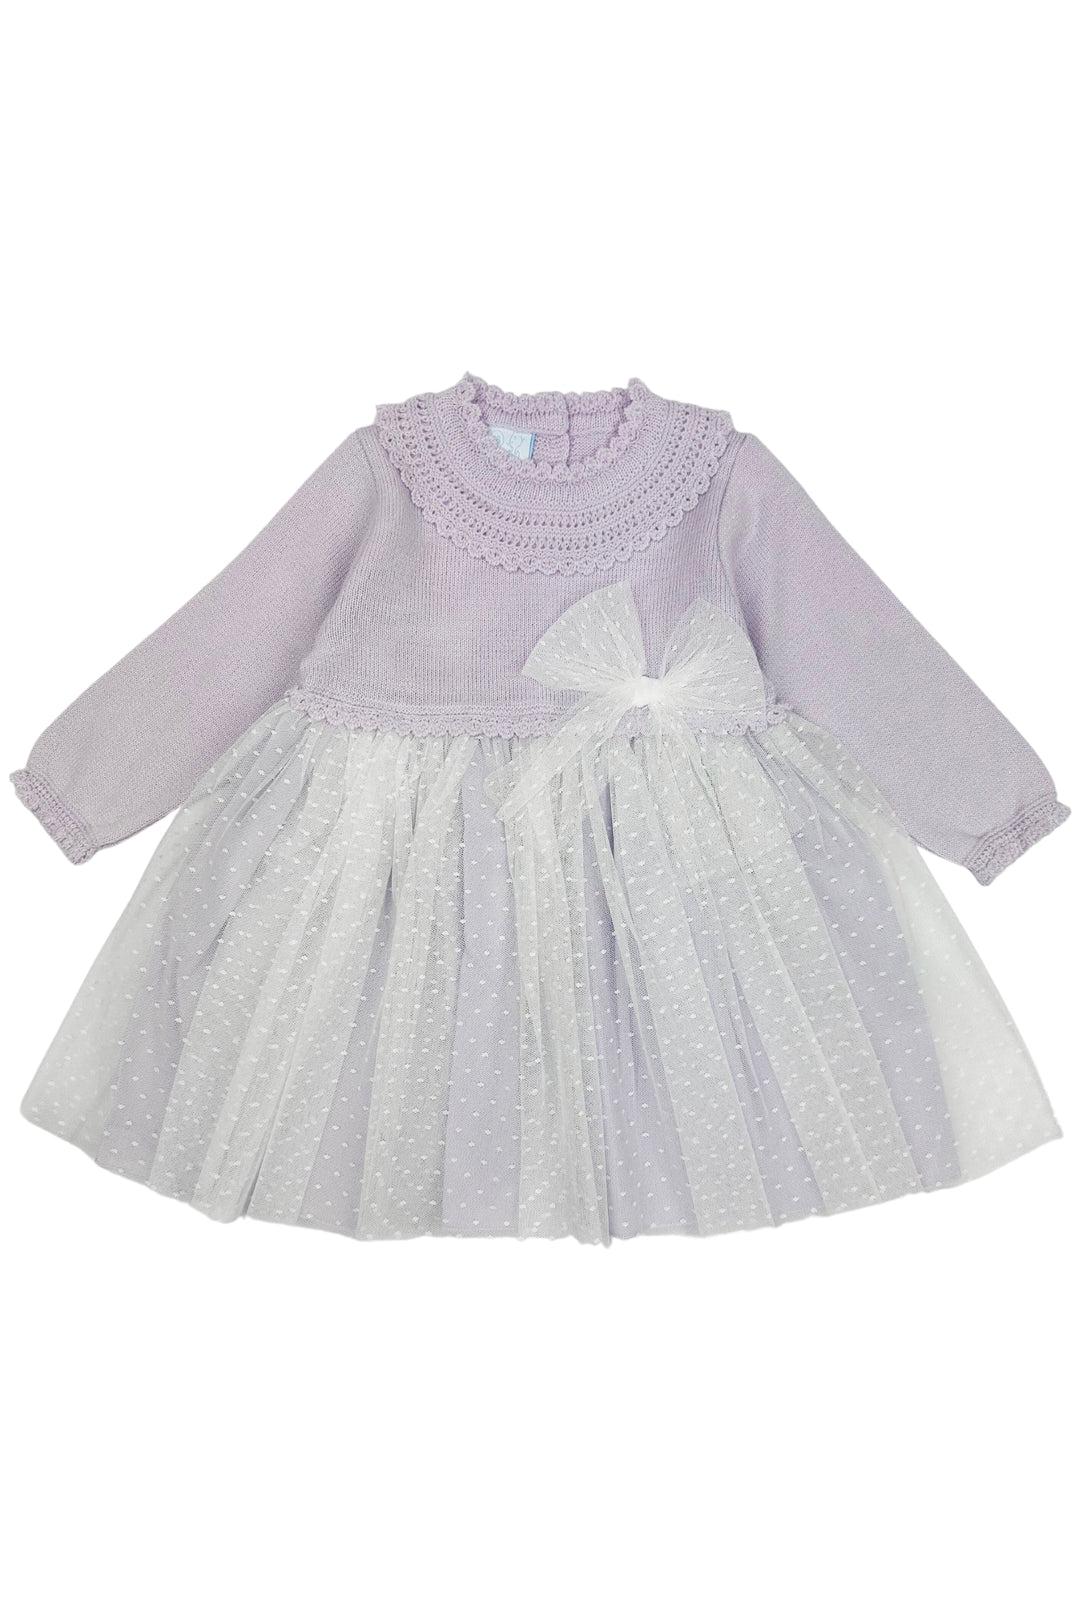 Granlei "Honey" Lilac Shimmer Knit Tulle Dress | Millie and John